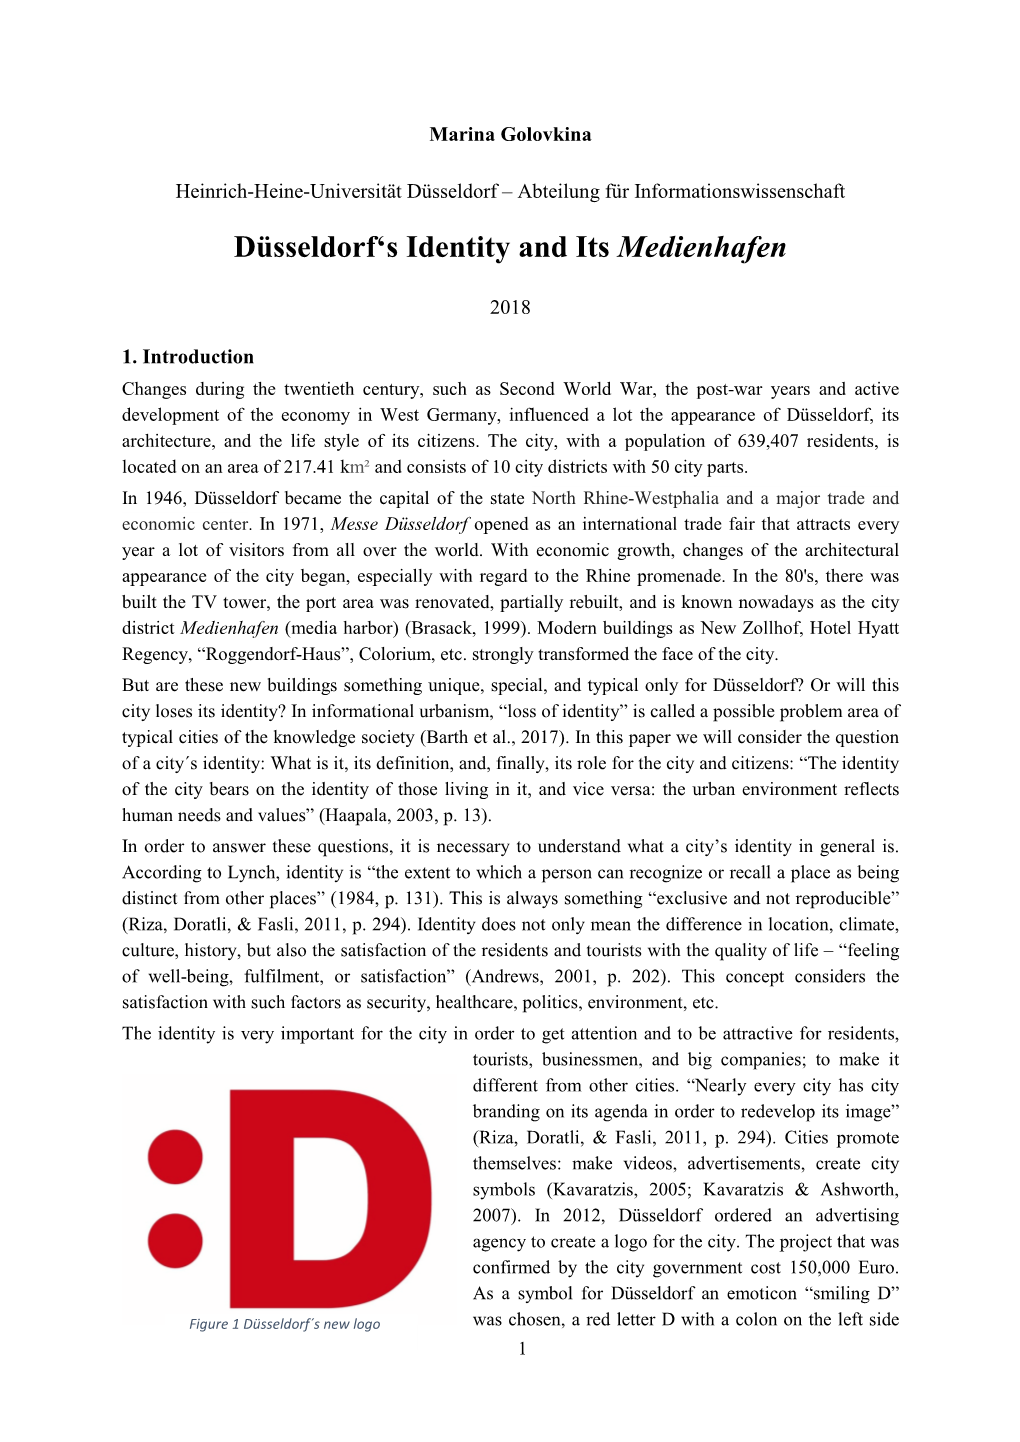 Düsseldorf's Identity and Its Medienhafen